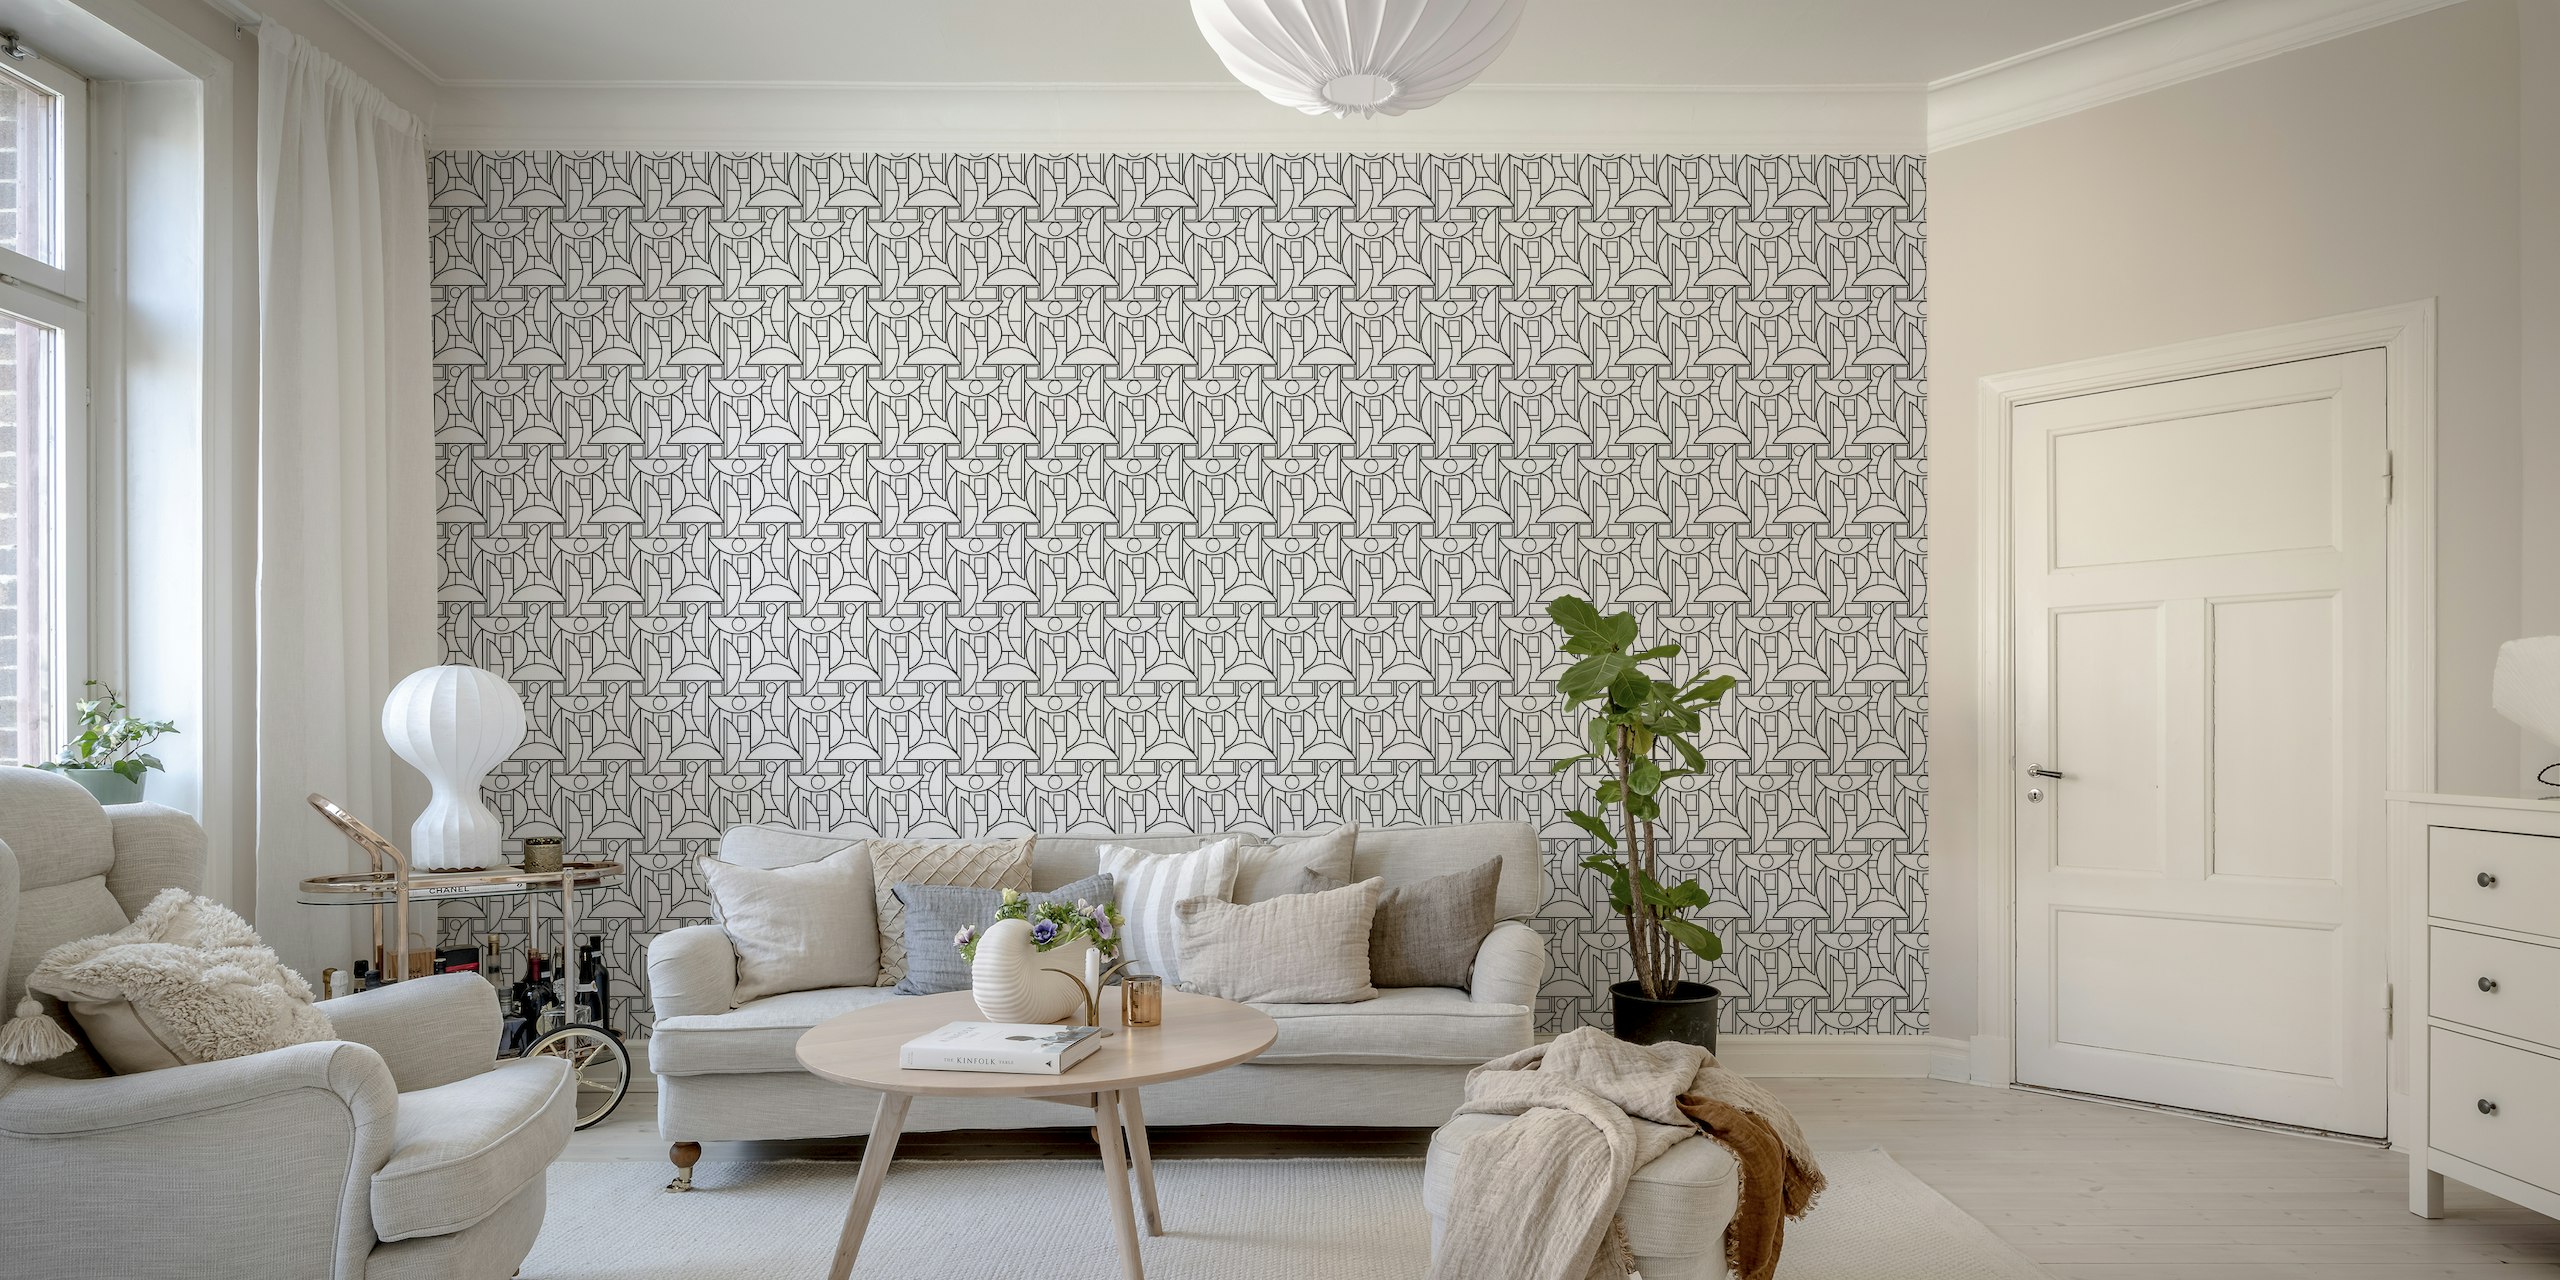 Fotomural vinílico de parede monocromático com padrão geométrico para interiores modernos e clássicos